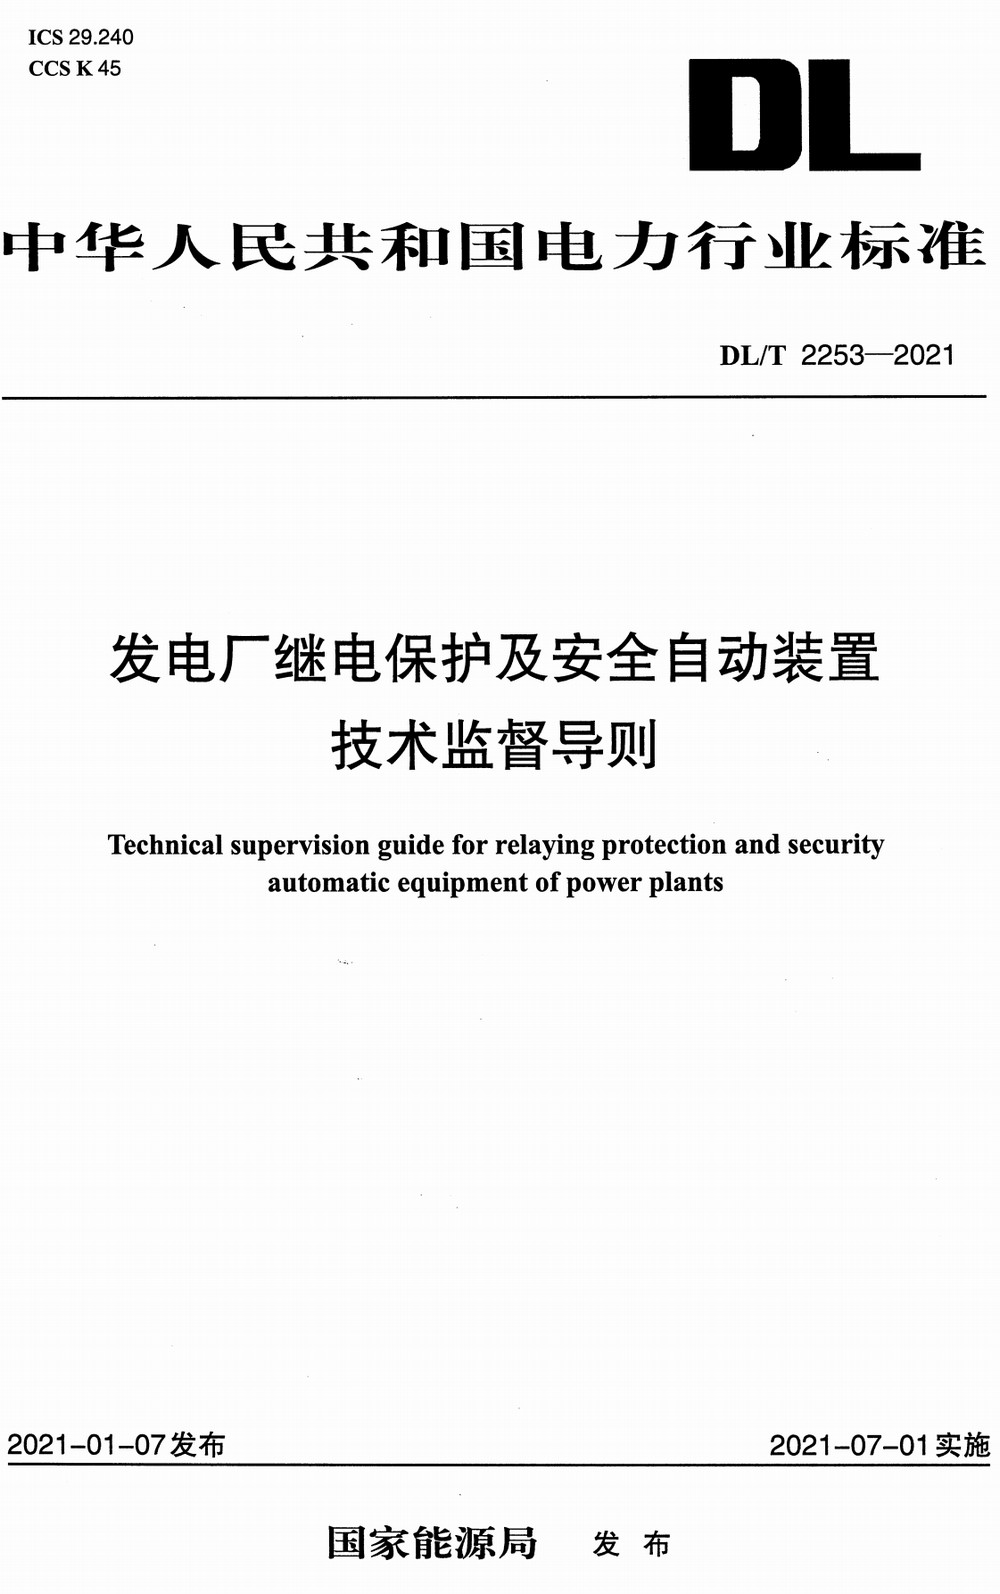 《发电厂继电保护及安全自动装置技术监督导则》（DL/T2253-2021）【全文附高清PDF+Word版下载】